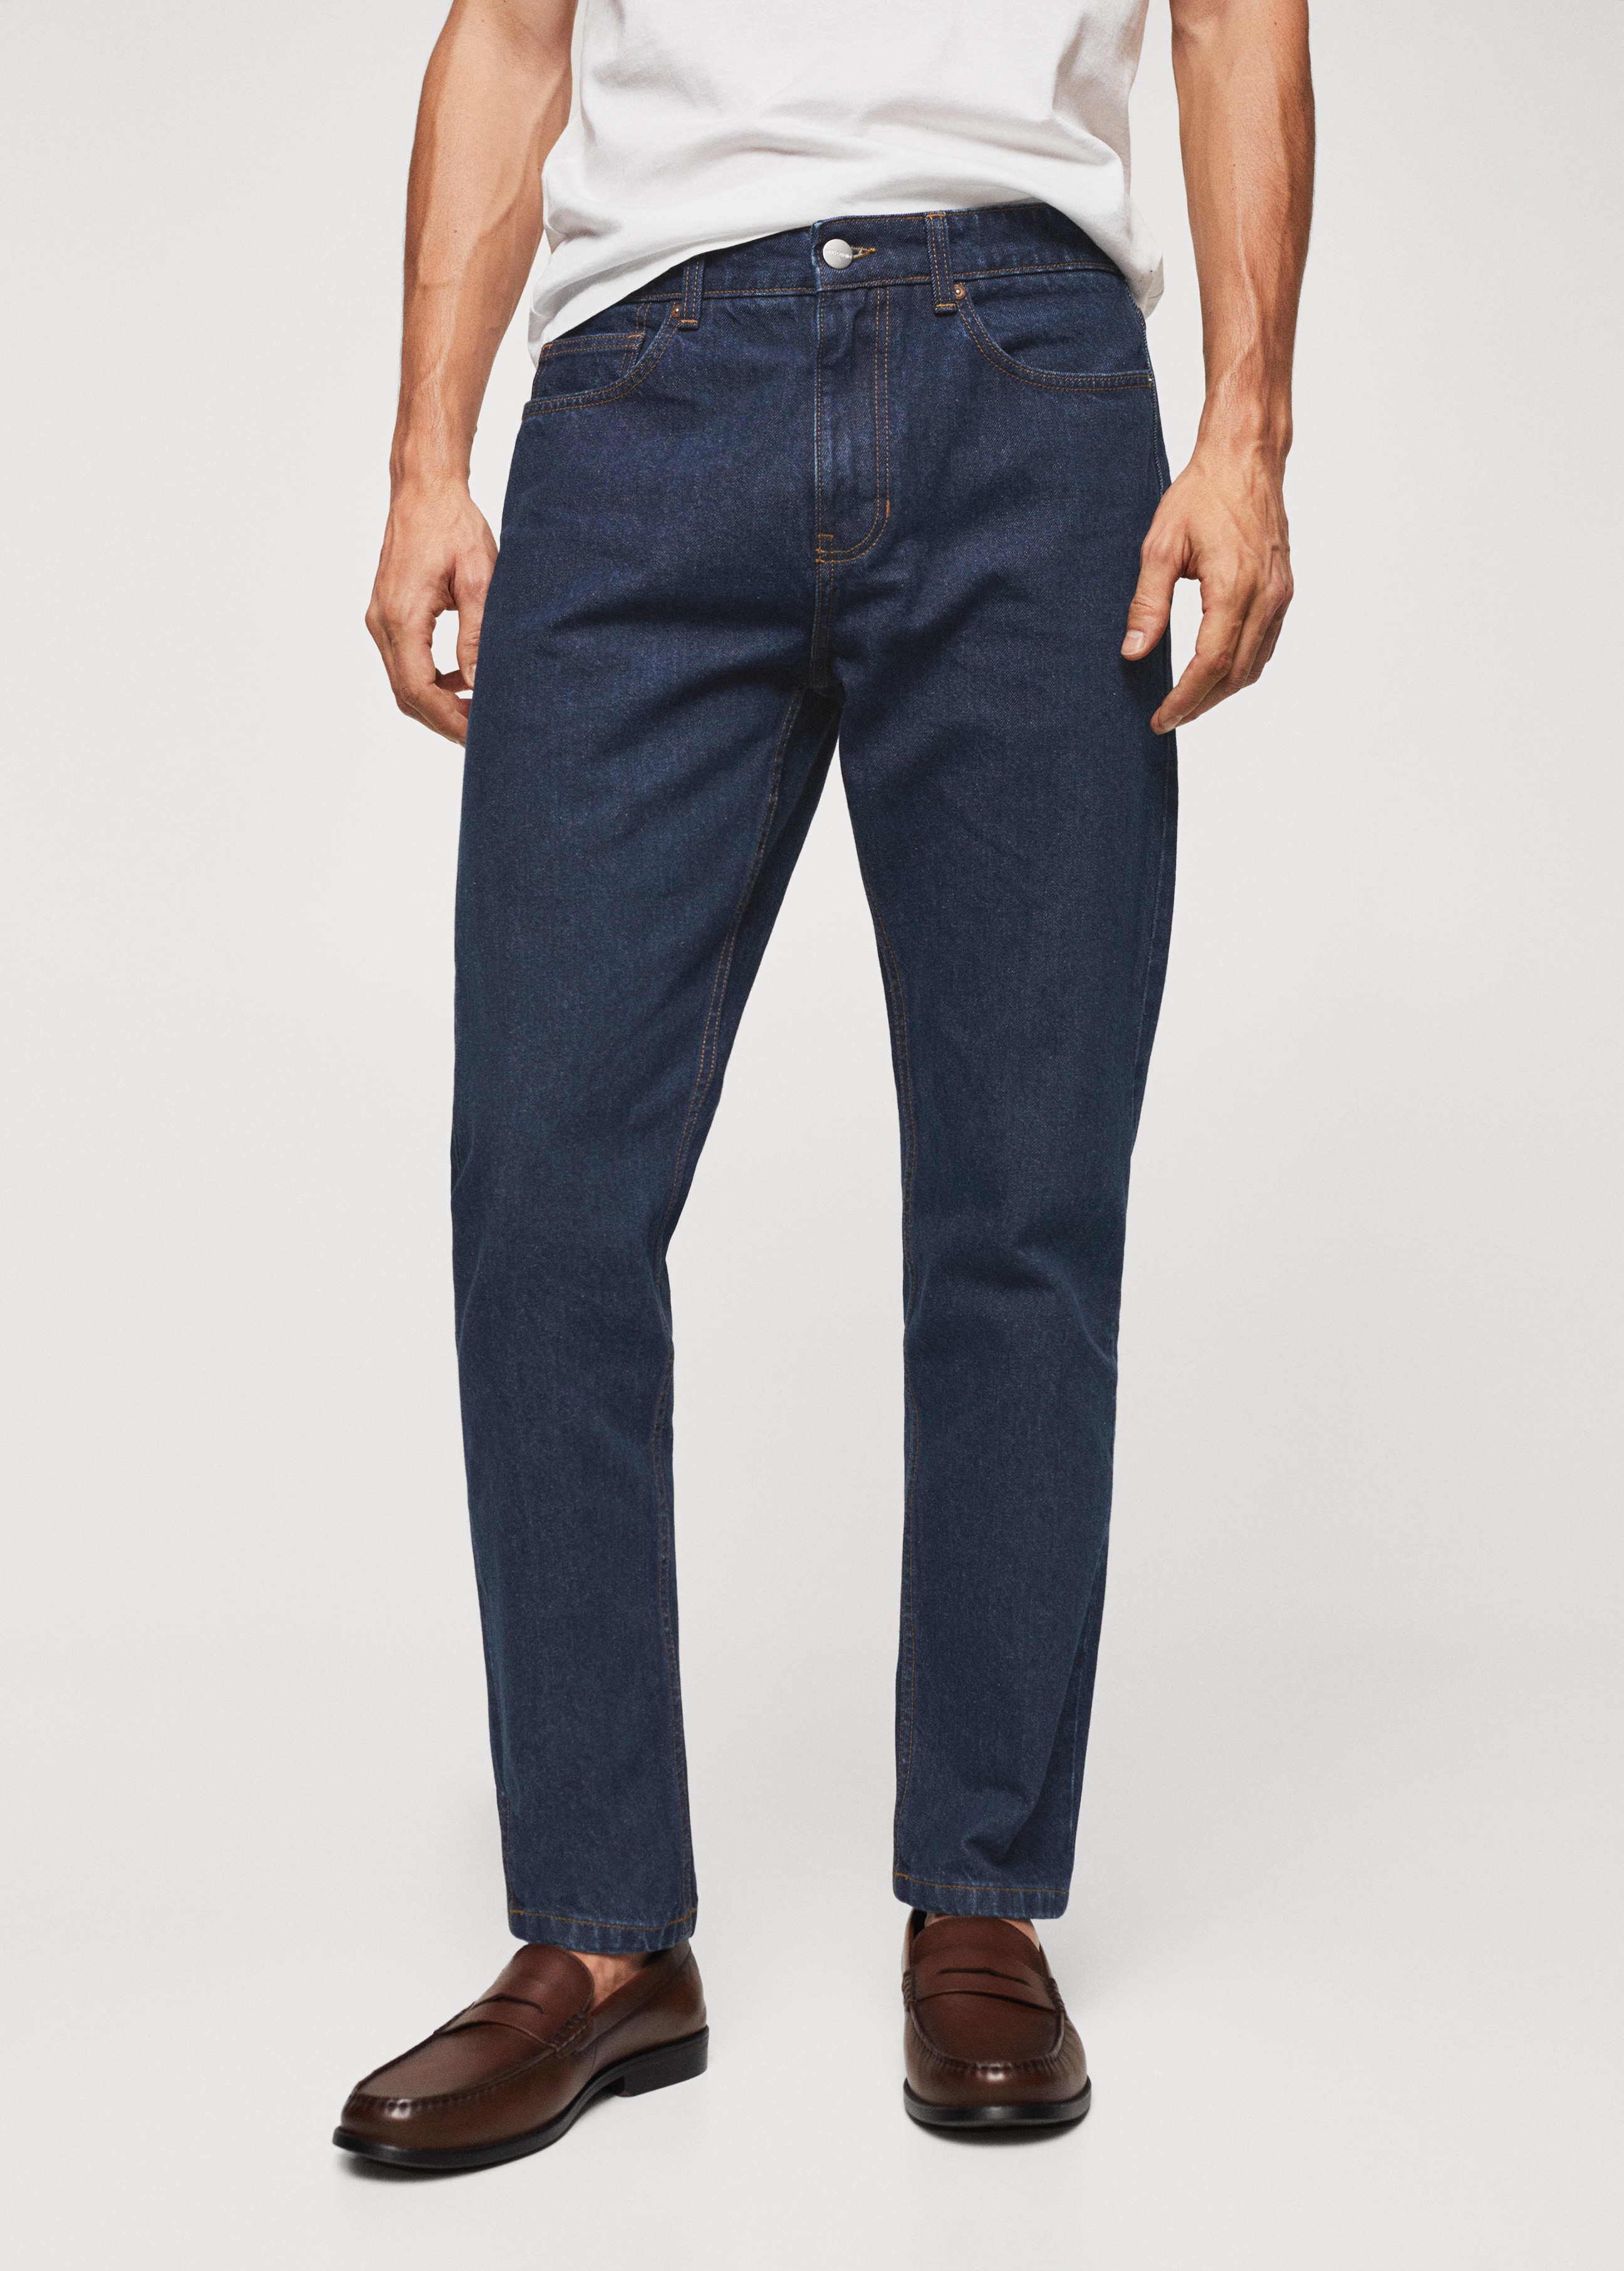 Jeans Bob straight-fit - Plano medio